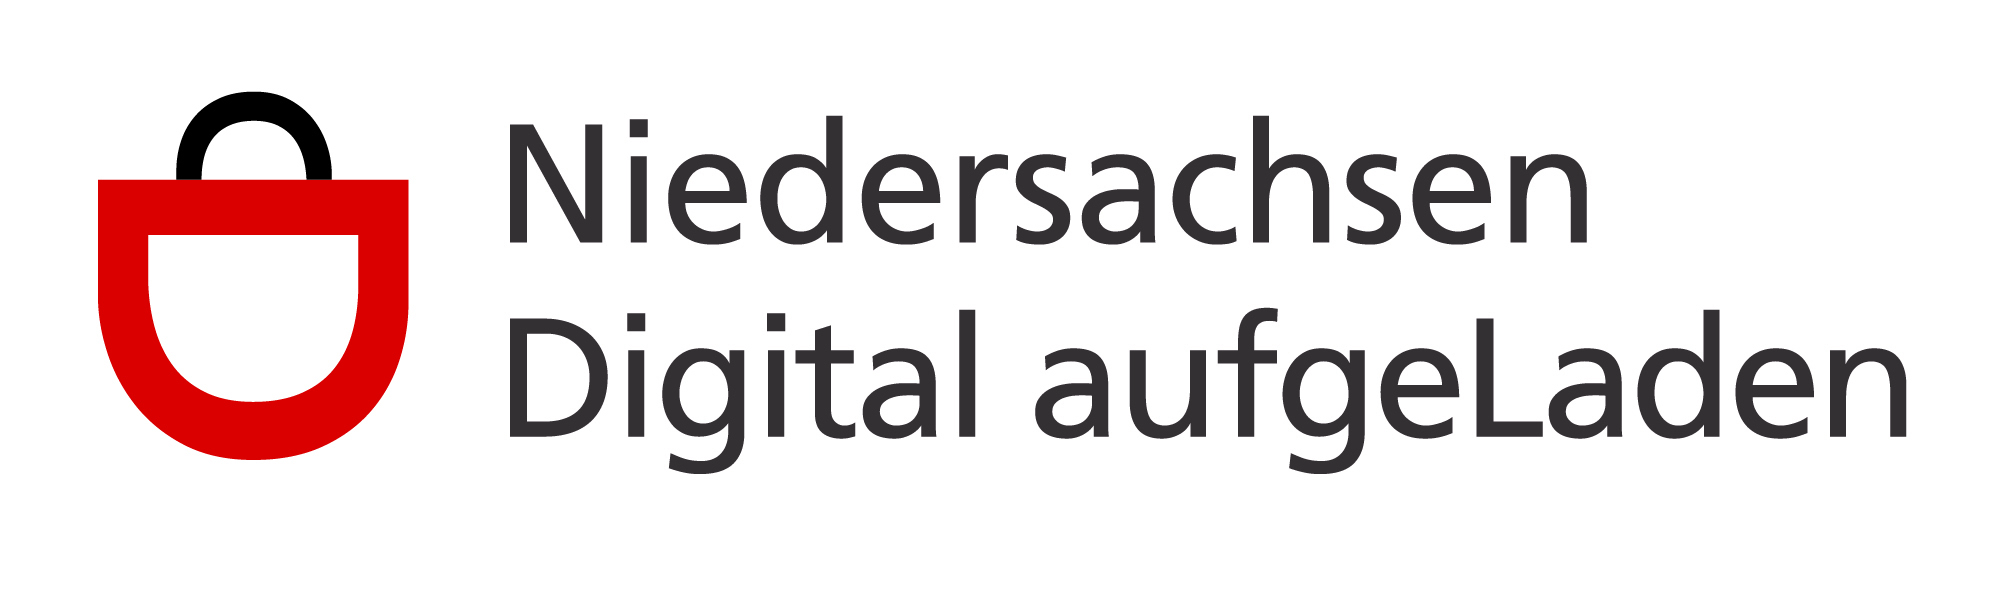 Niedersachsen digital aufgeLaden Logo